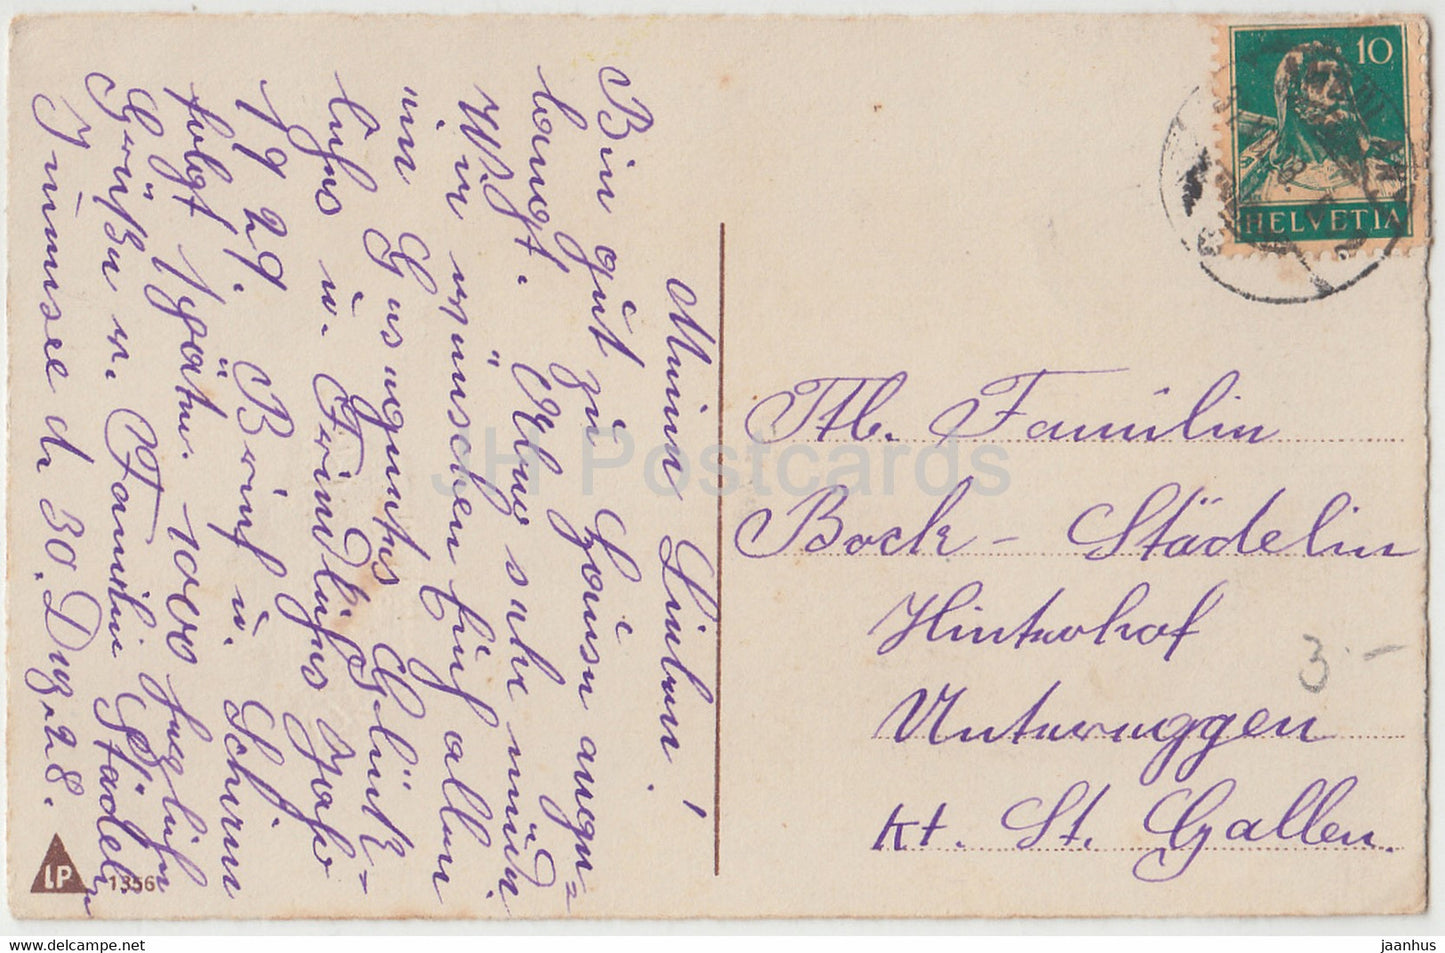 Neujahrsgrußkarte - Herzlichen Glückwunsch zum Neuen Jahre - LP 1356 - alte Postkarte - 1928 - Deutschland - gebraucht